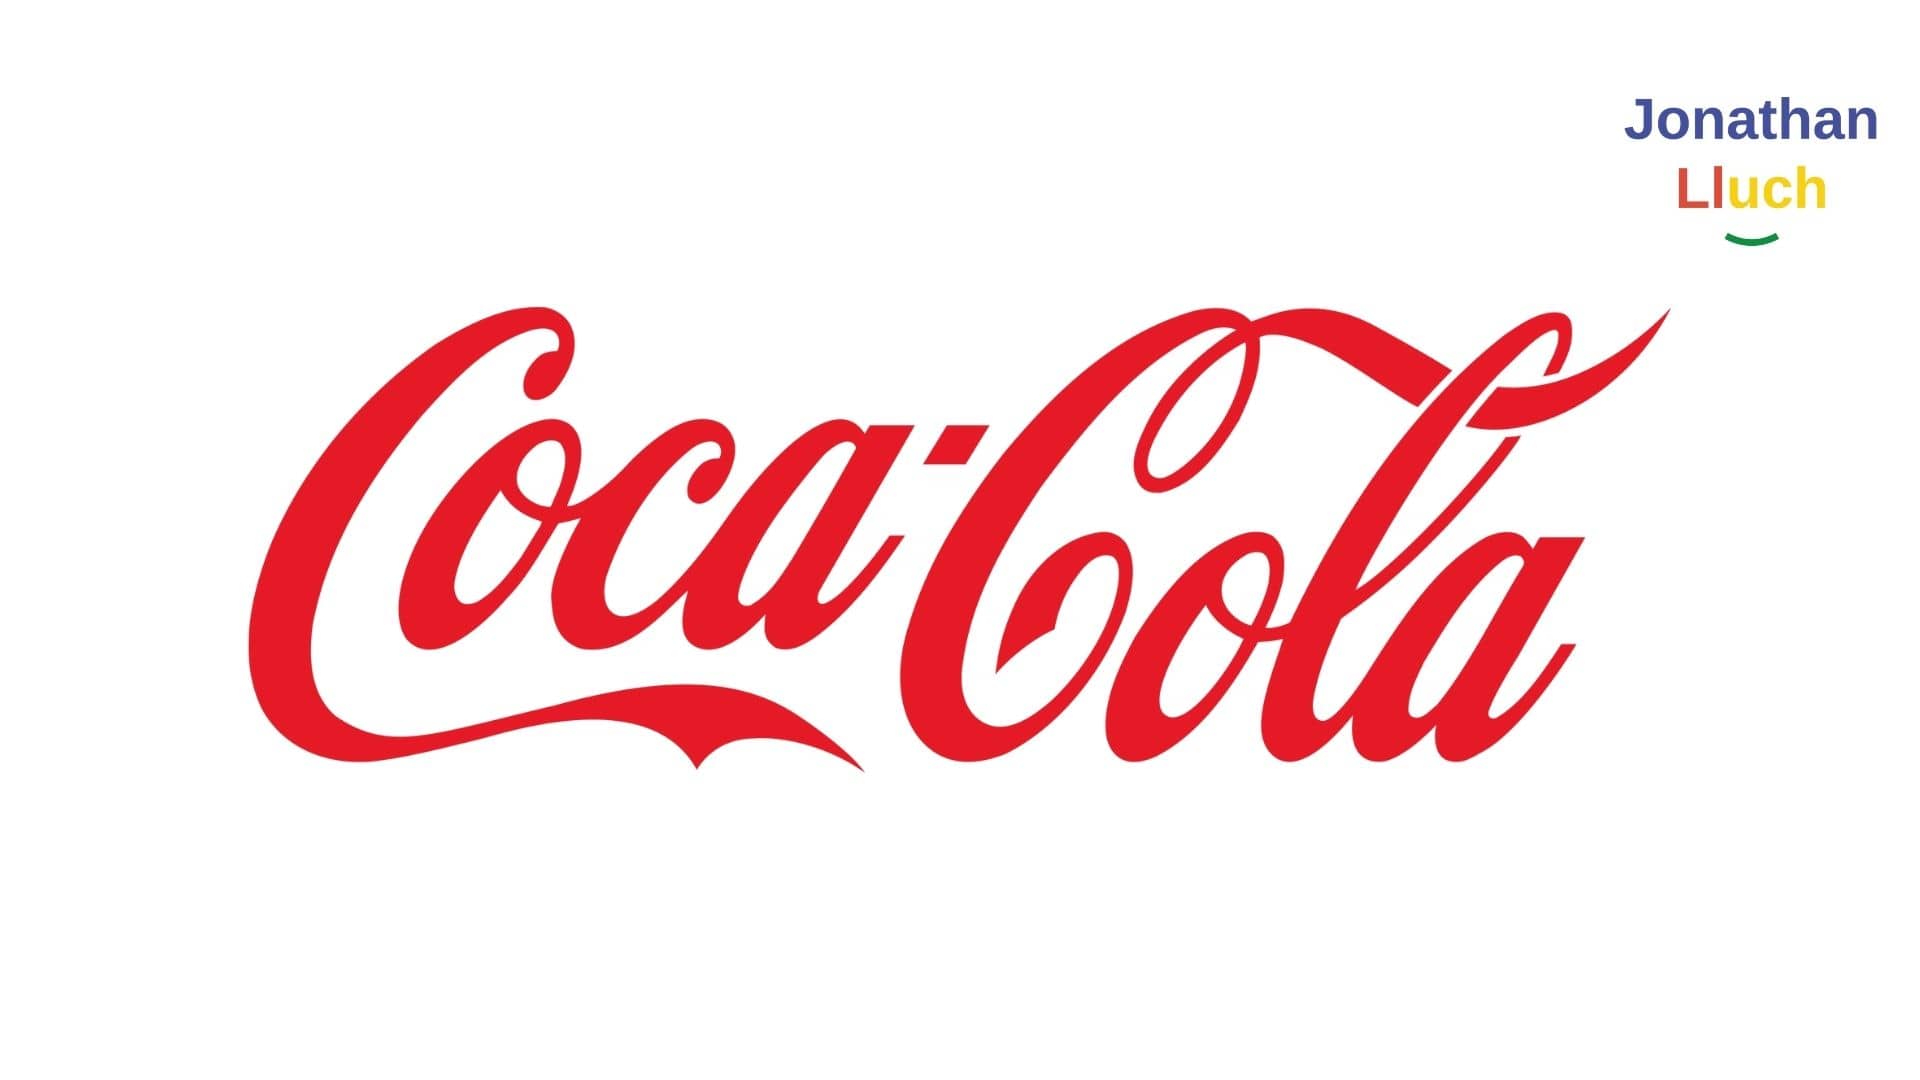 estrategias de marketing y publicidad de coca cola